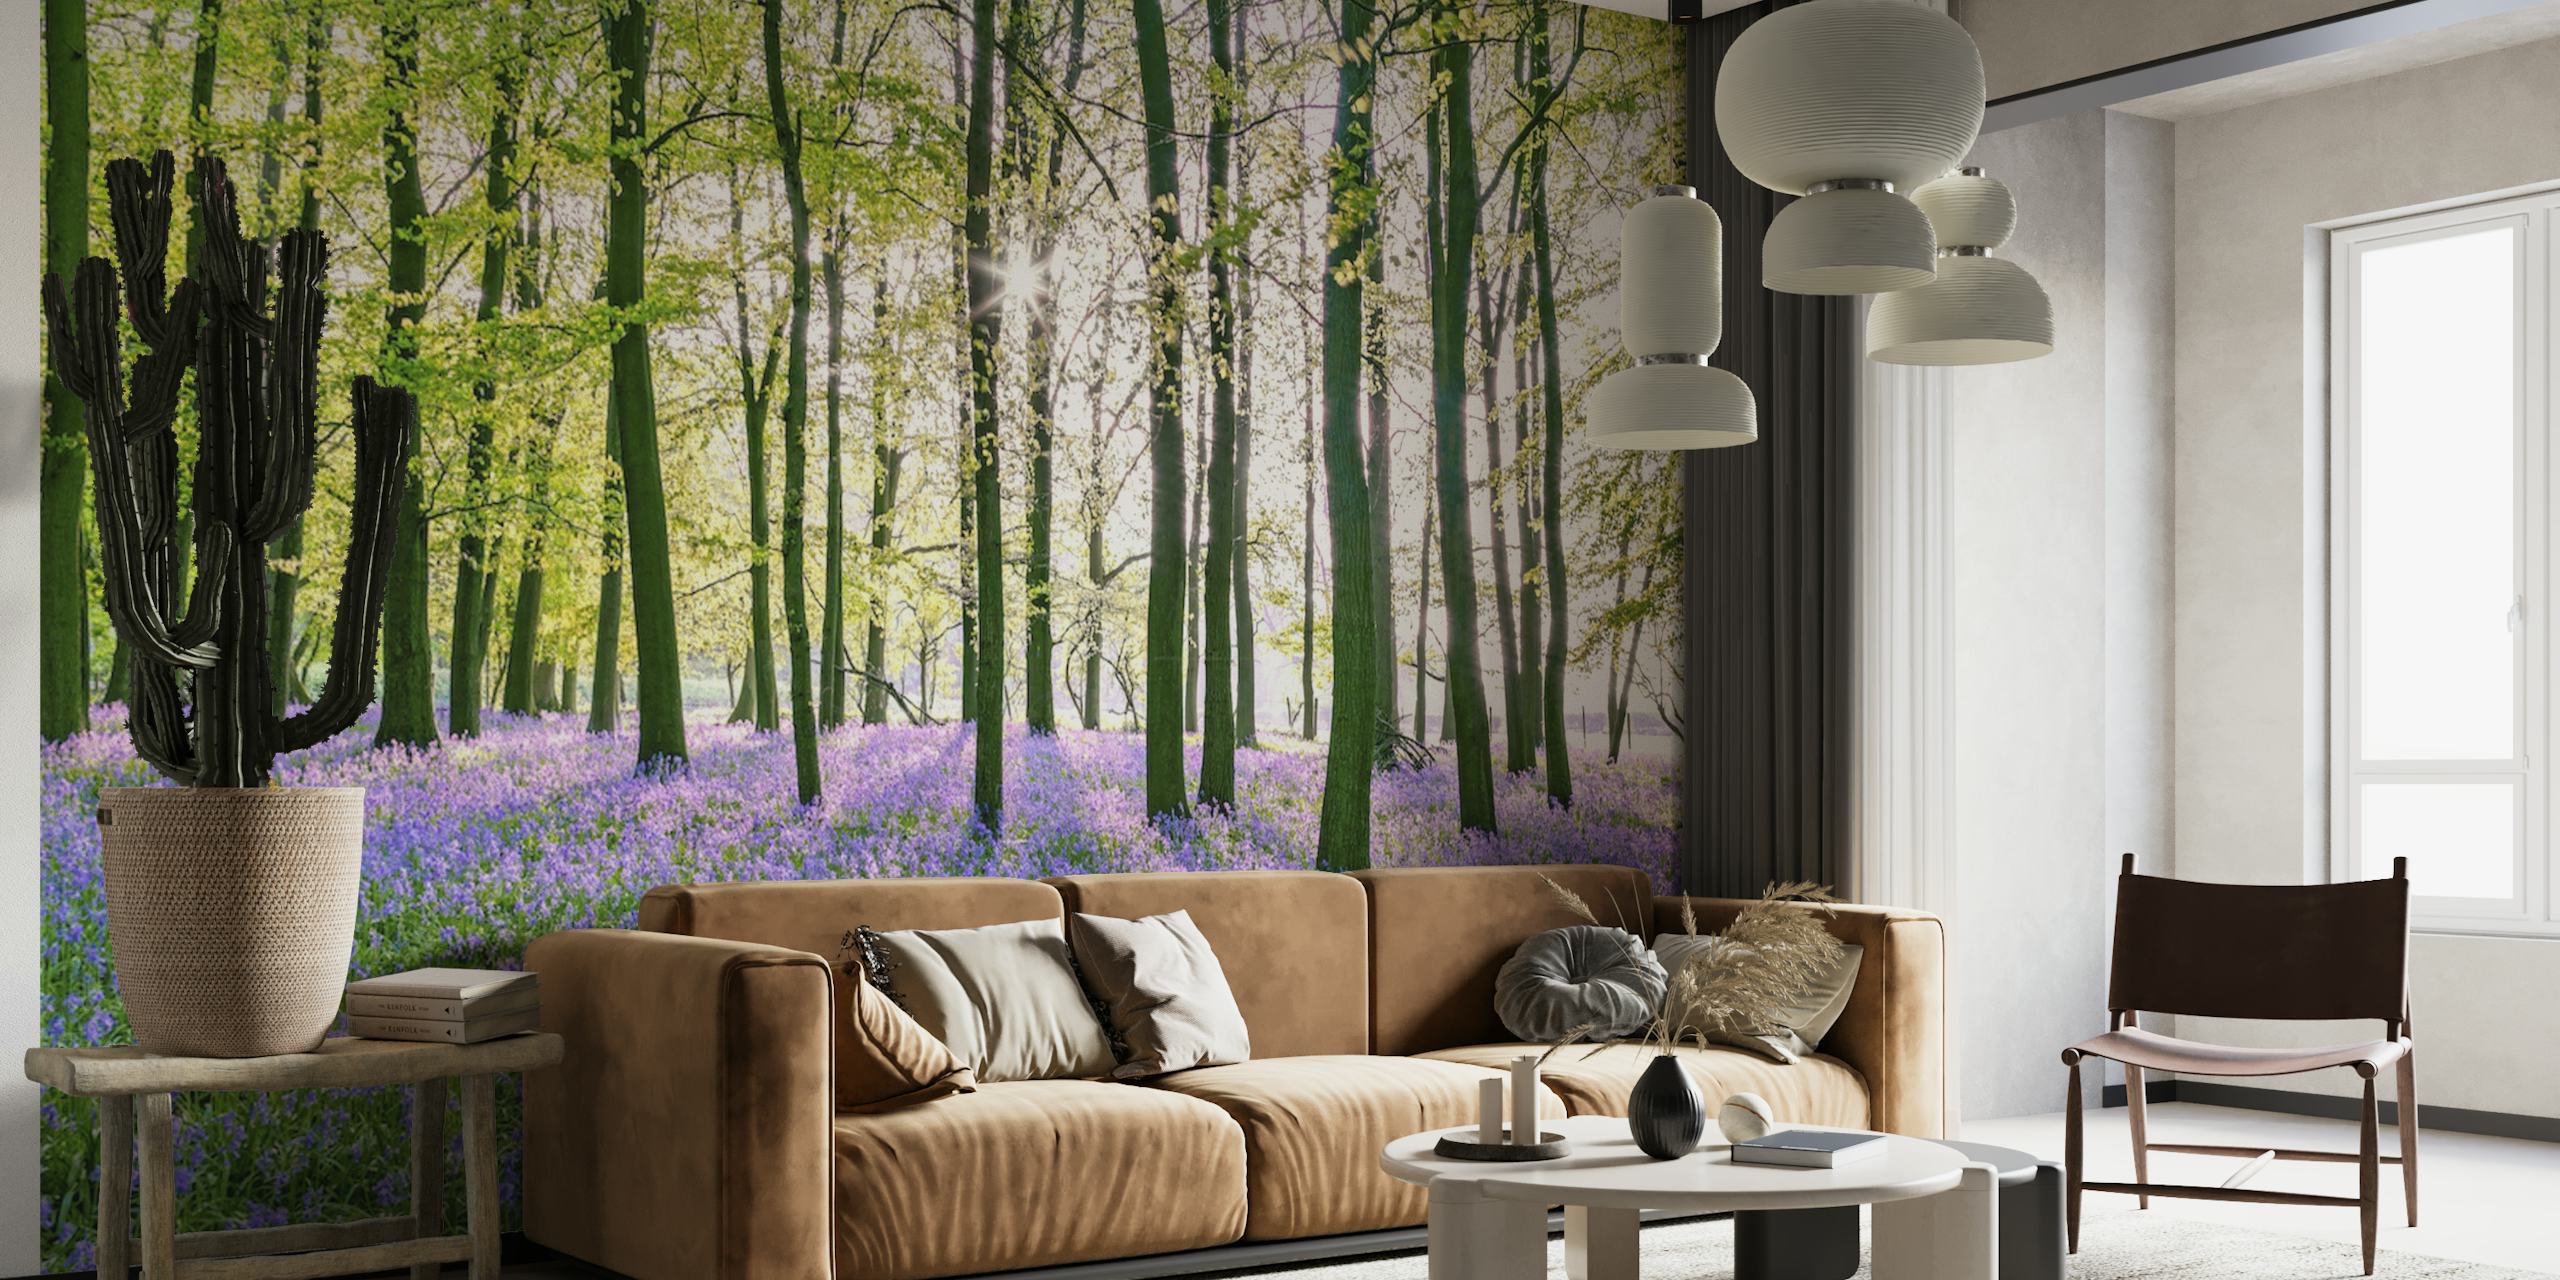 Een serene bosmuurschildering met een weelderig groen bladerdak en levendige paarse bloemen die de bosbodem bedekken.